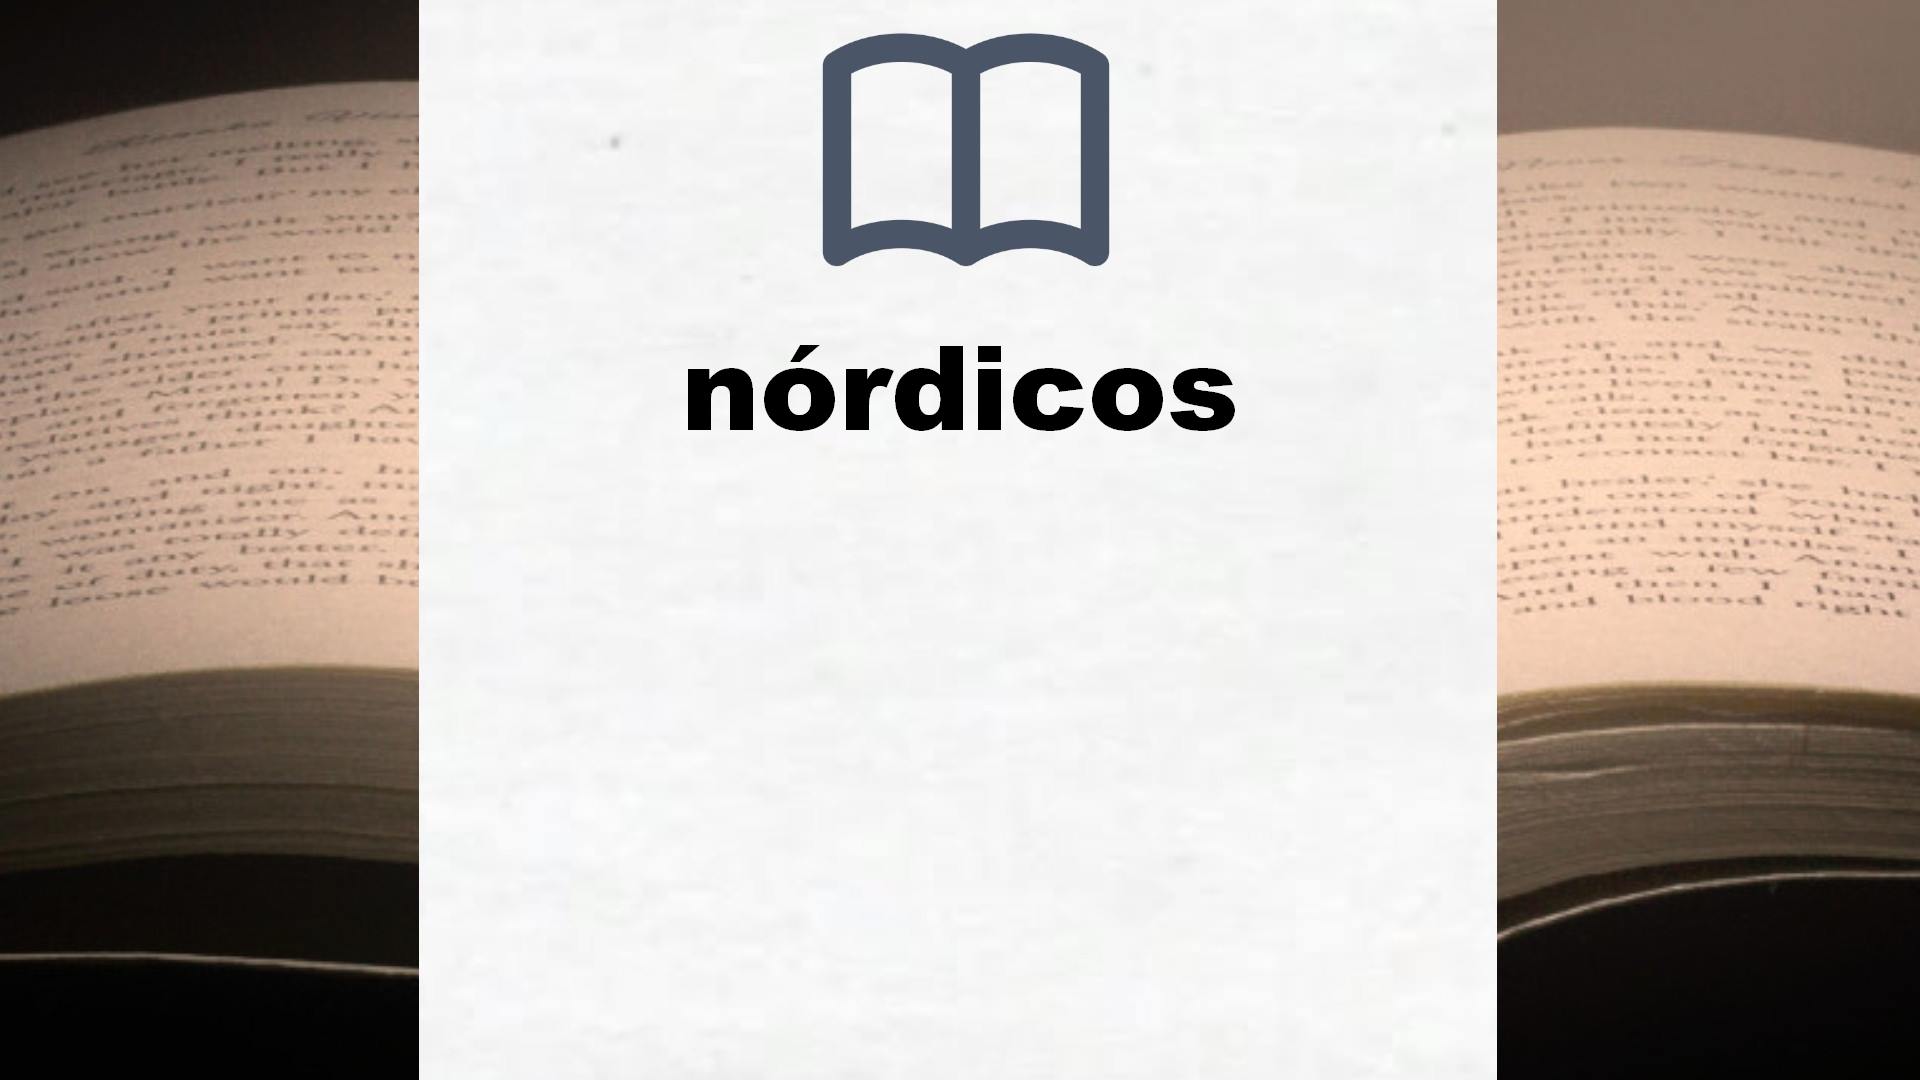 Libros sobre nórdicos